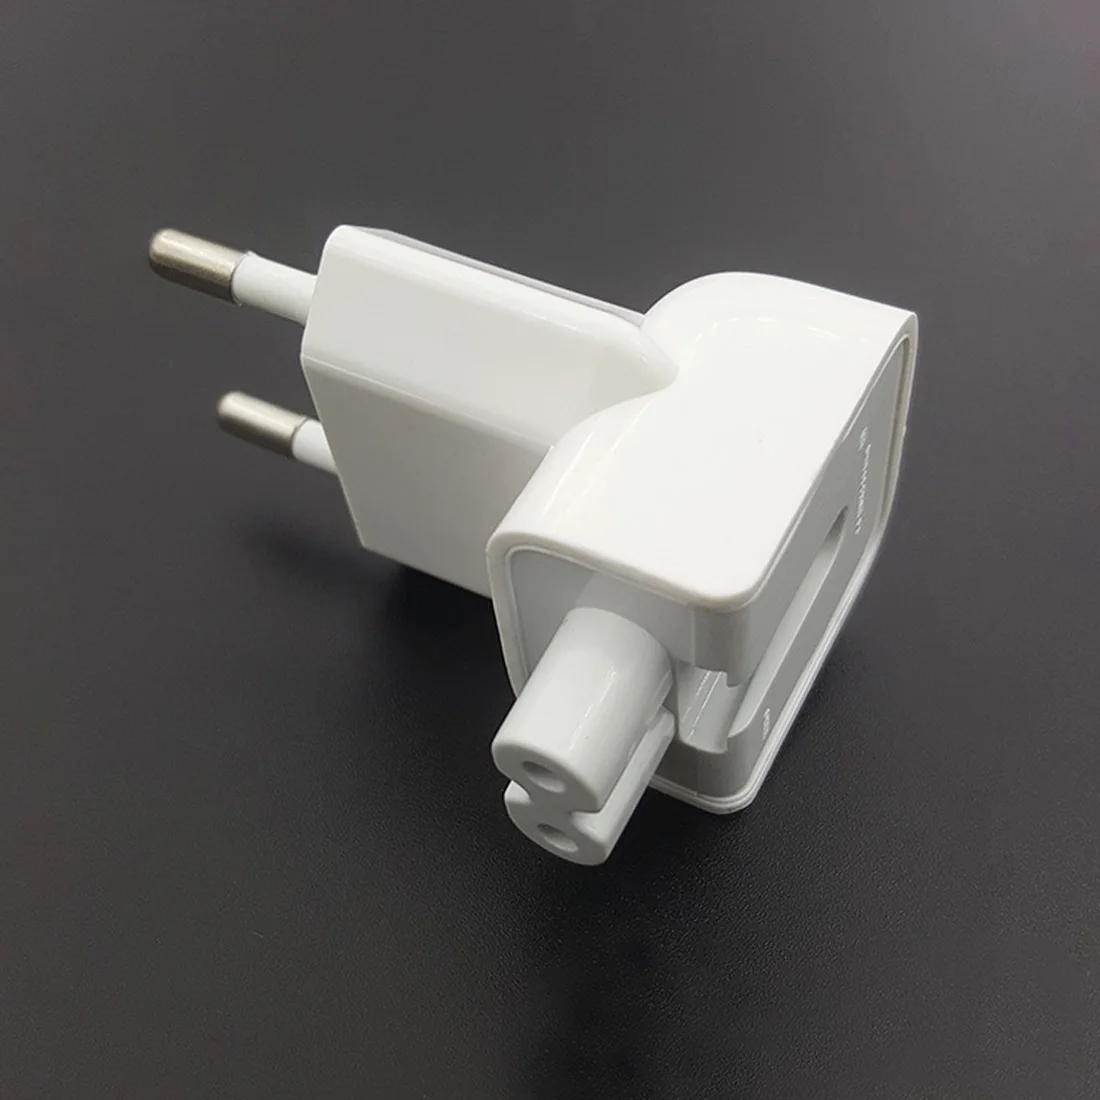 Etmakit настенный AC съемный Электрический евро ЕС штекер УТКА ГОЛОВА для iPad iPhone USB зарядное устройство для MacBook адаптер питания